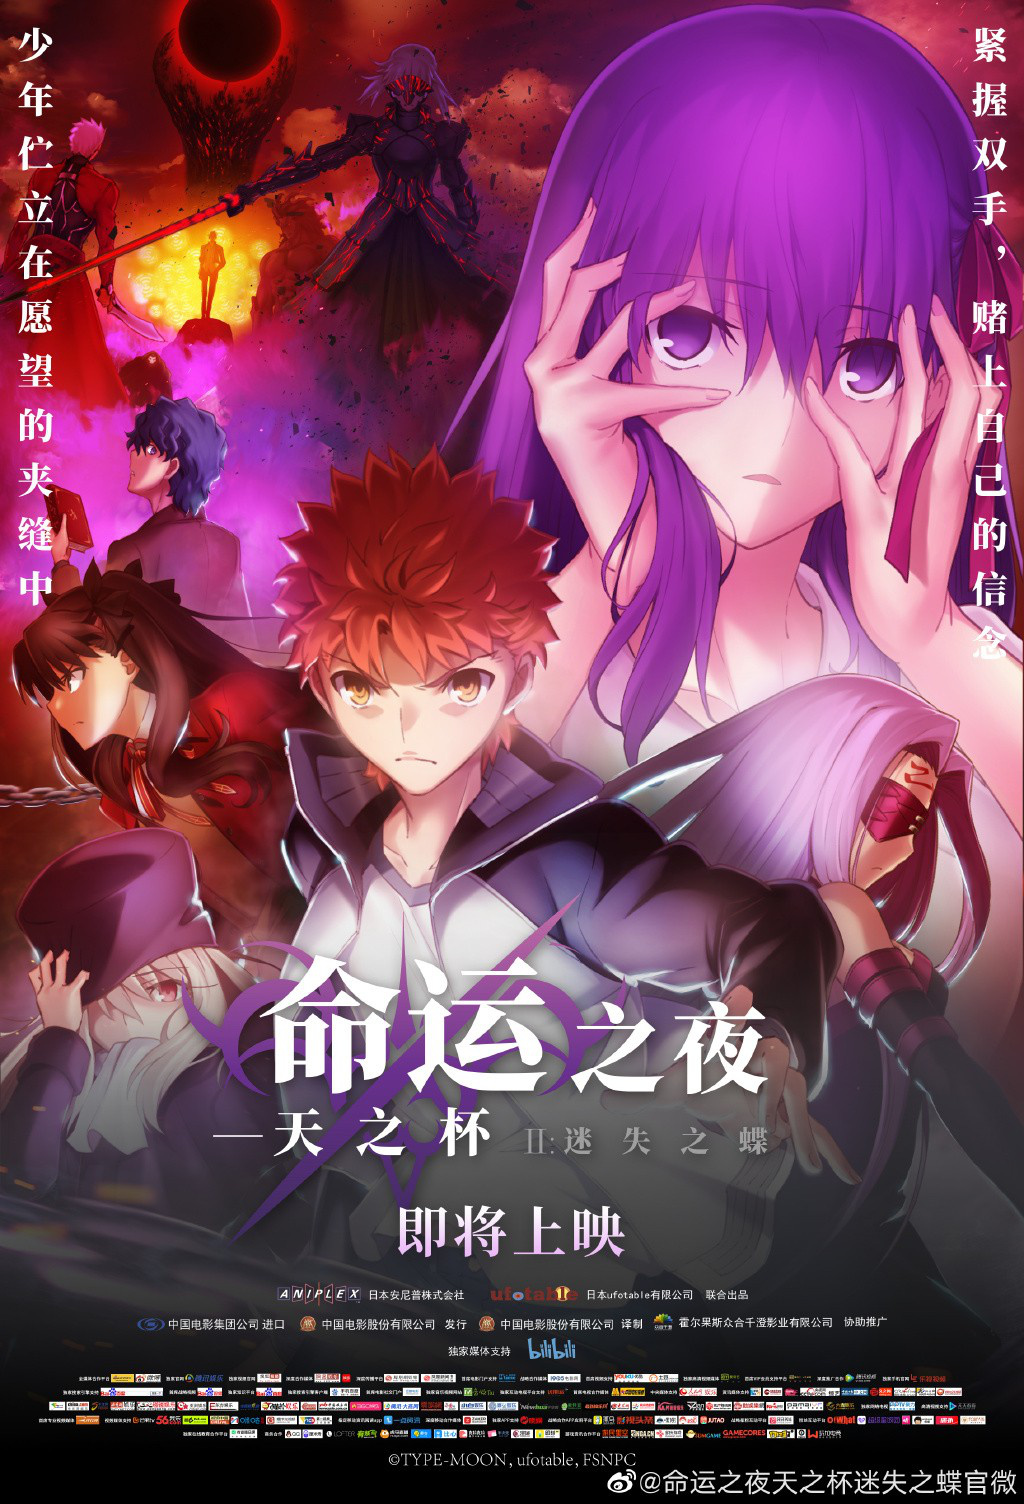 Fate2将引进内地 《命运之夜天之杯2》曝中文海报